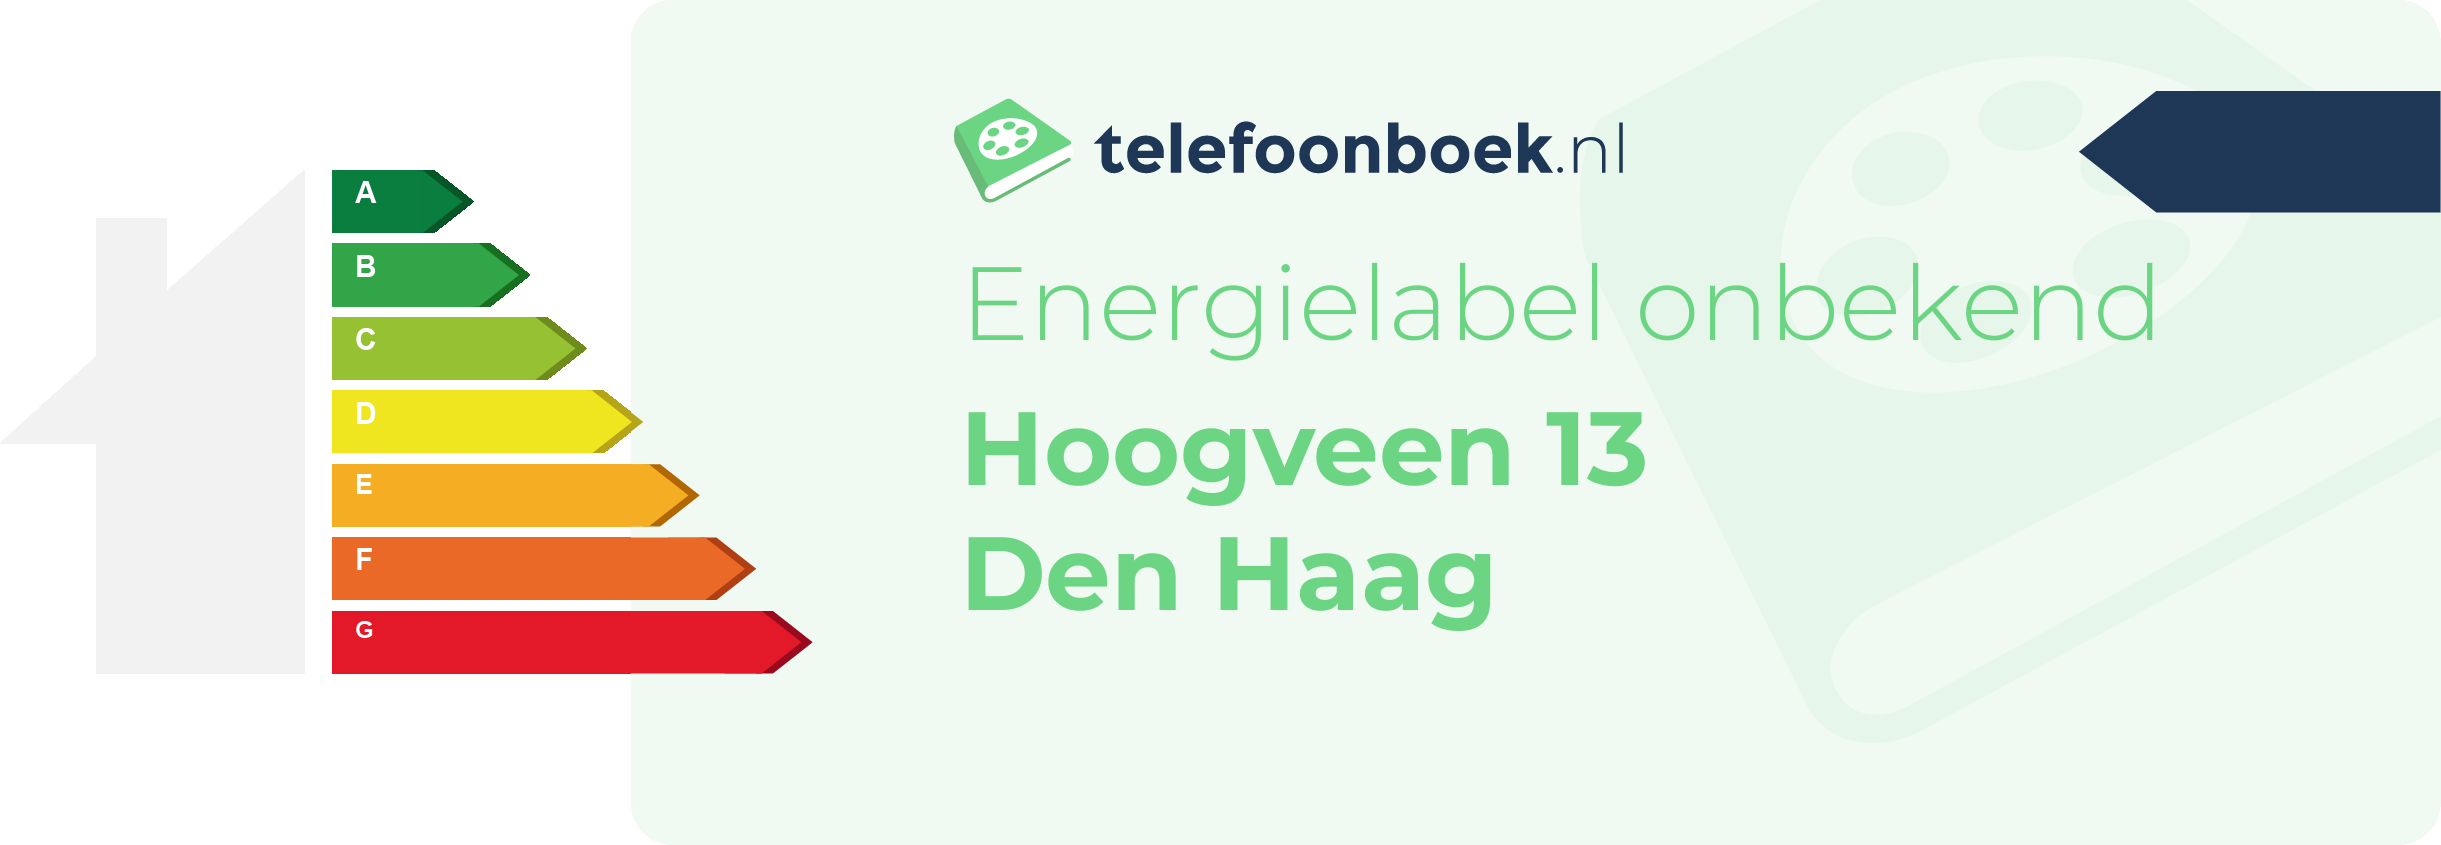 Energielabel Hoogveen 13 Den Haag